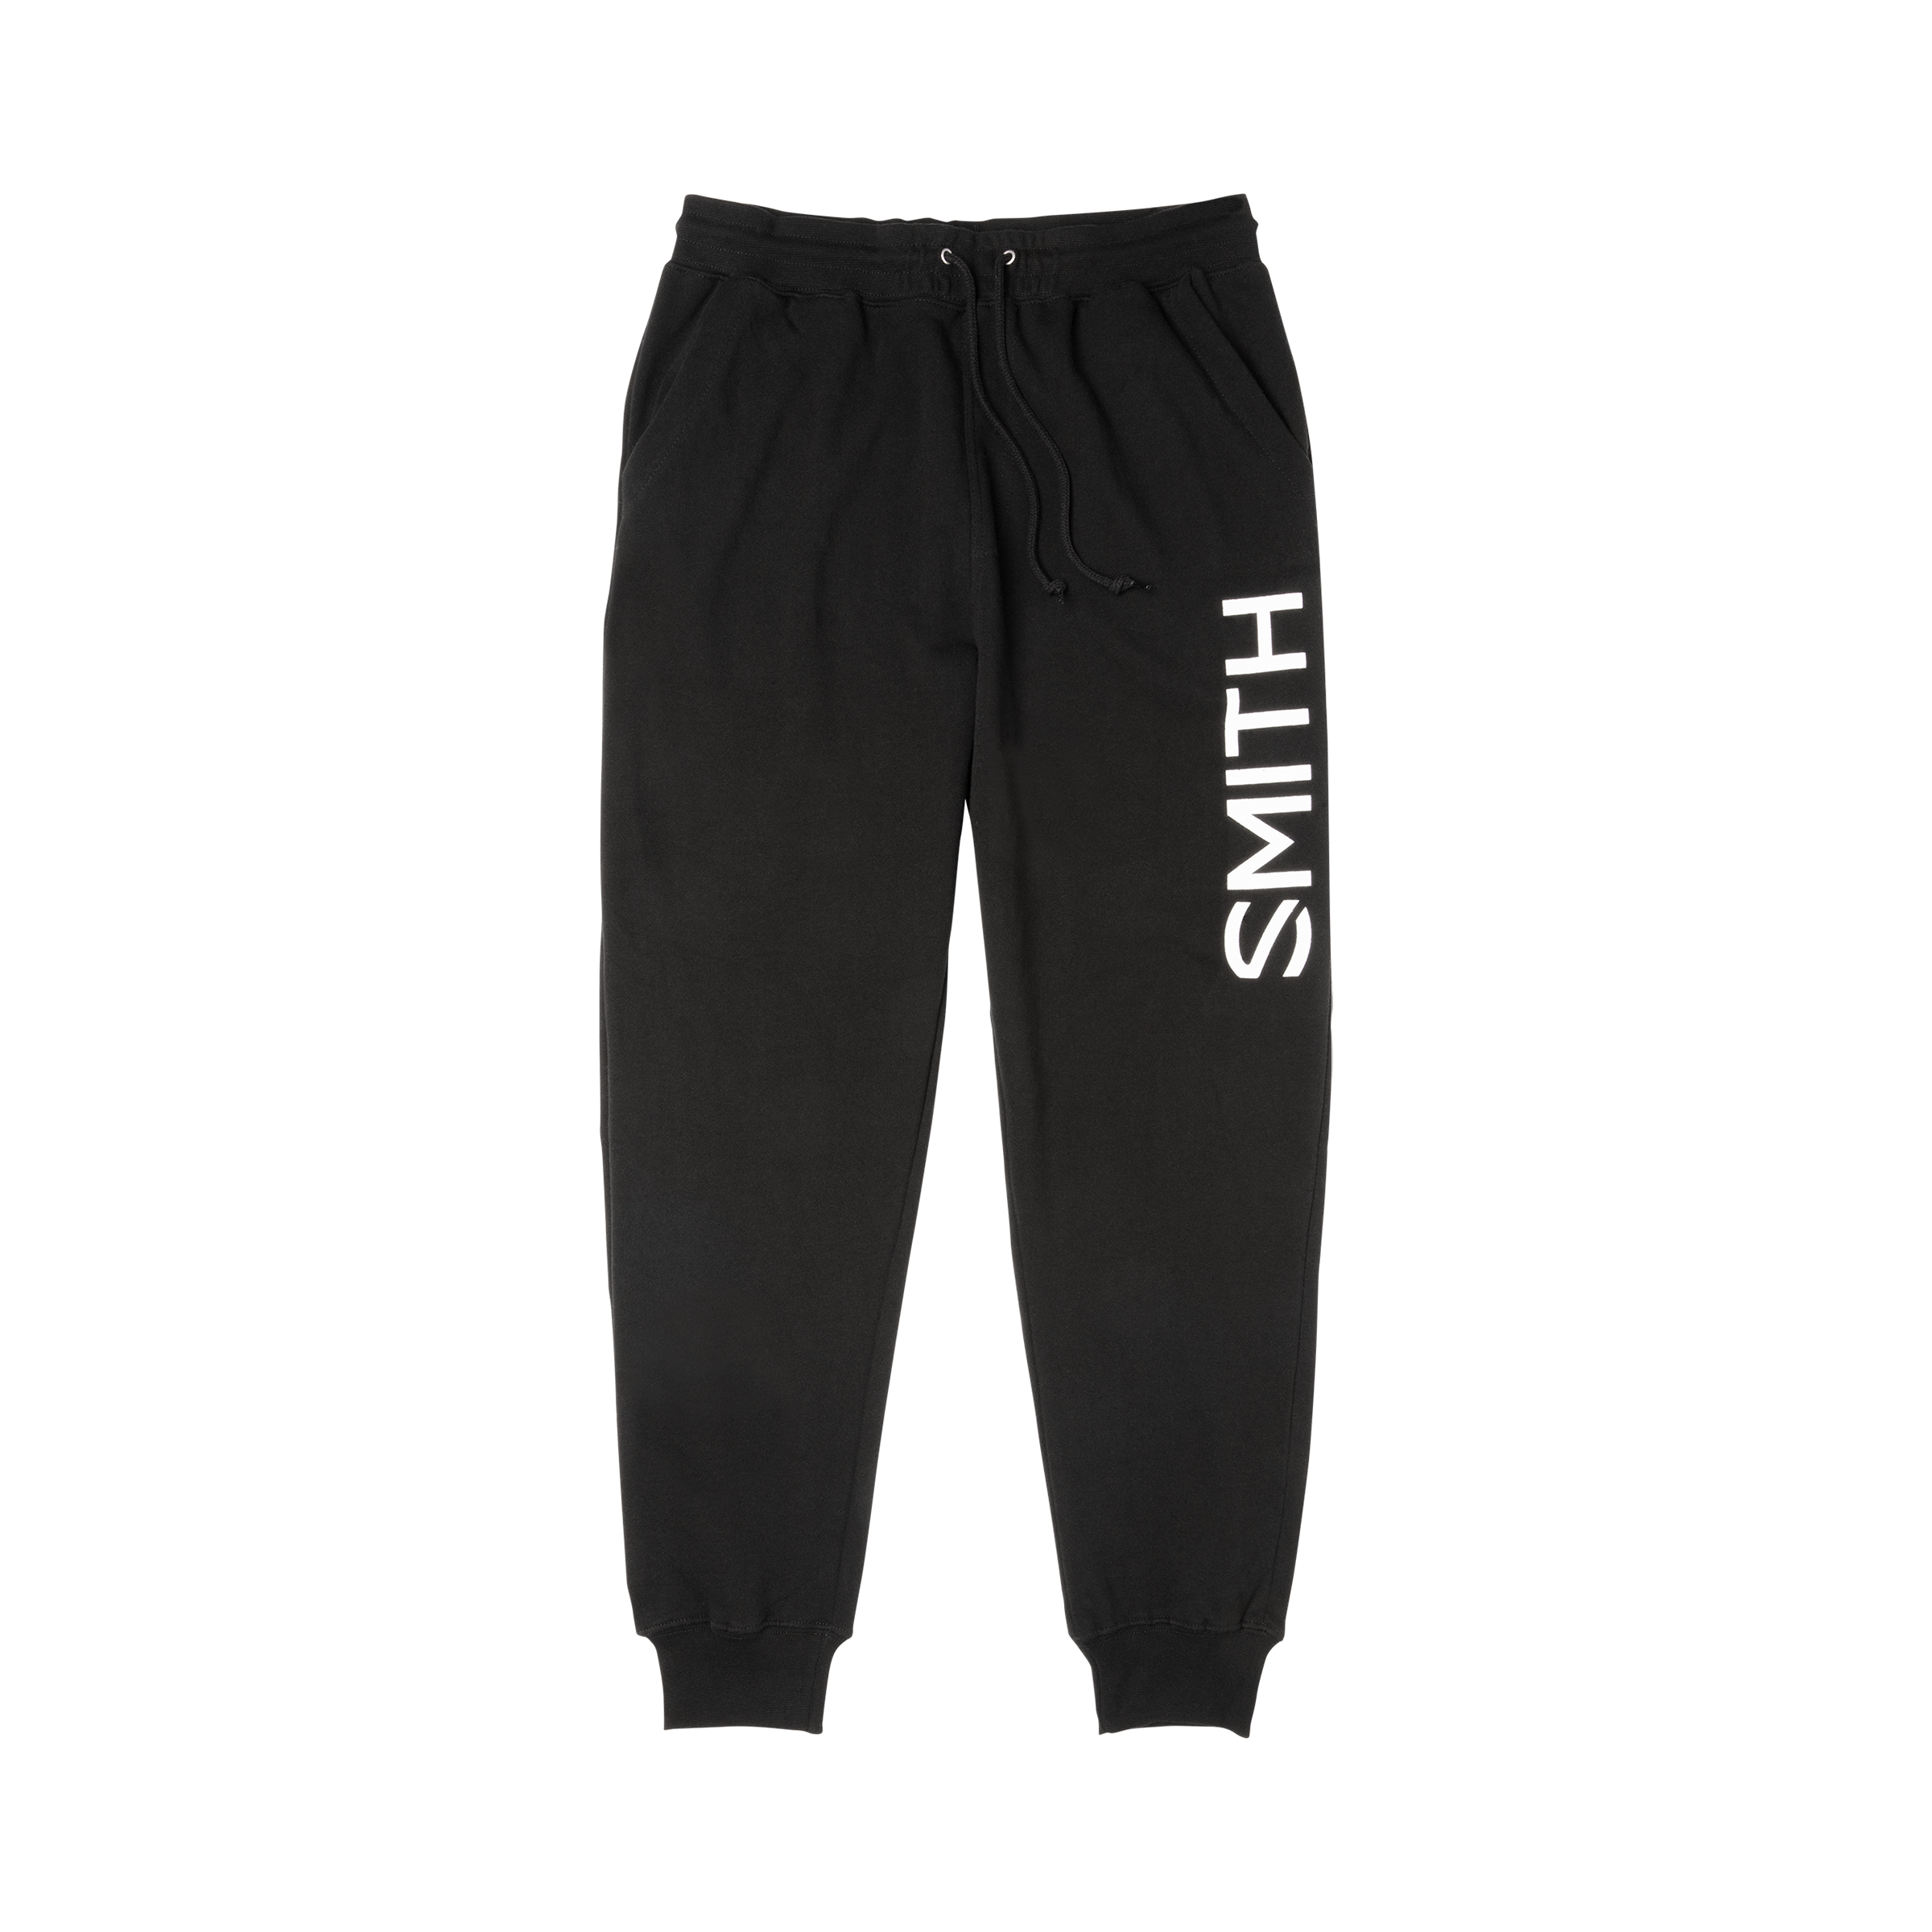 Buy Sweet Pants for USD 55.00 | Smith Optics